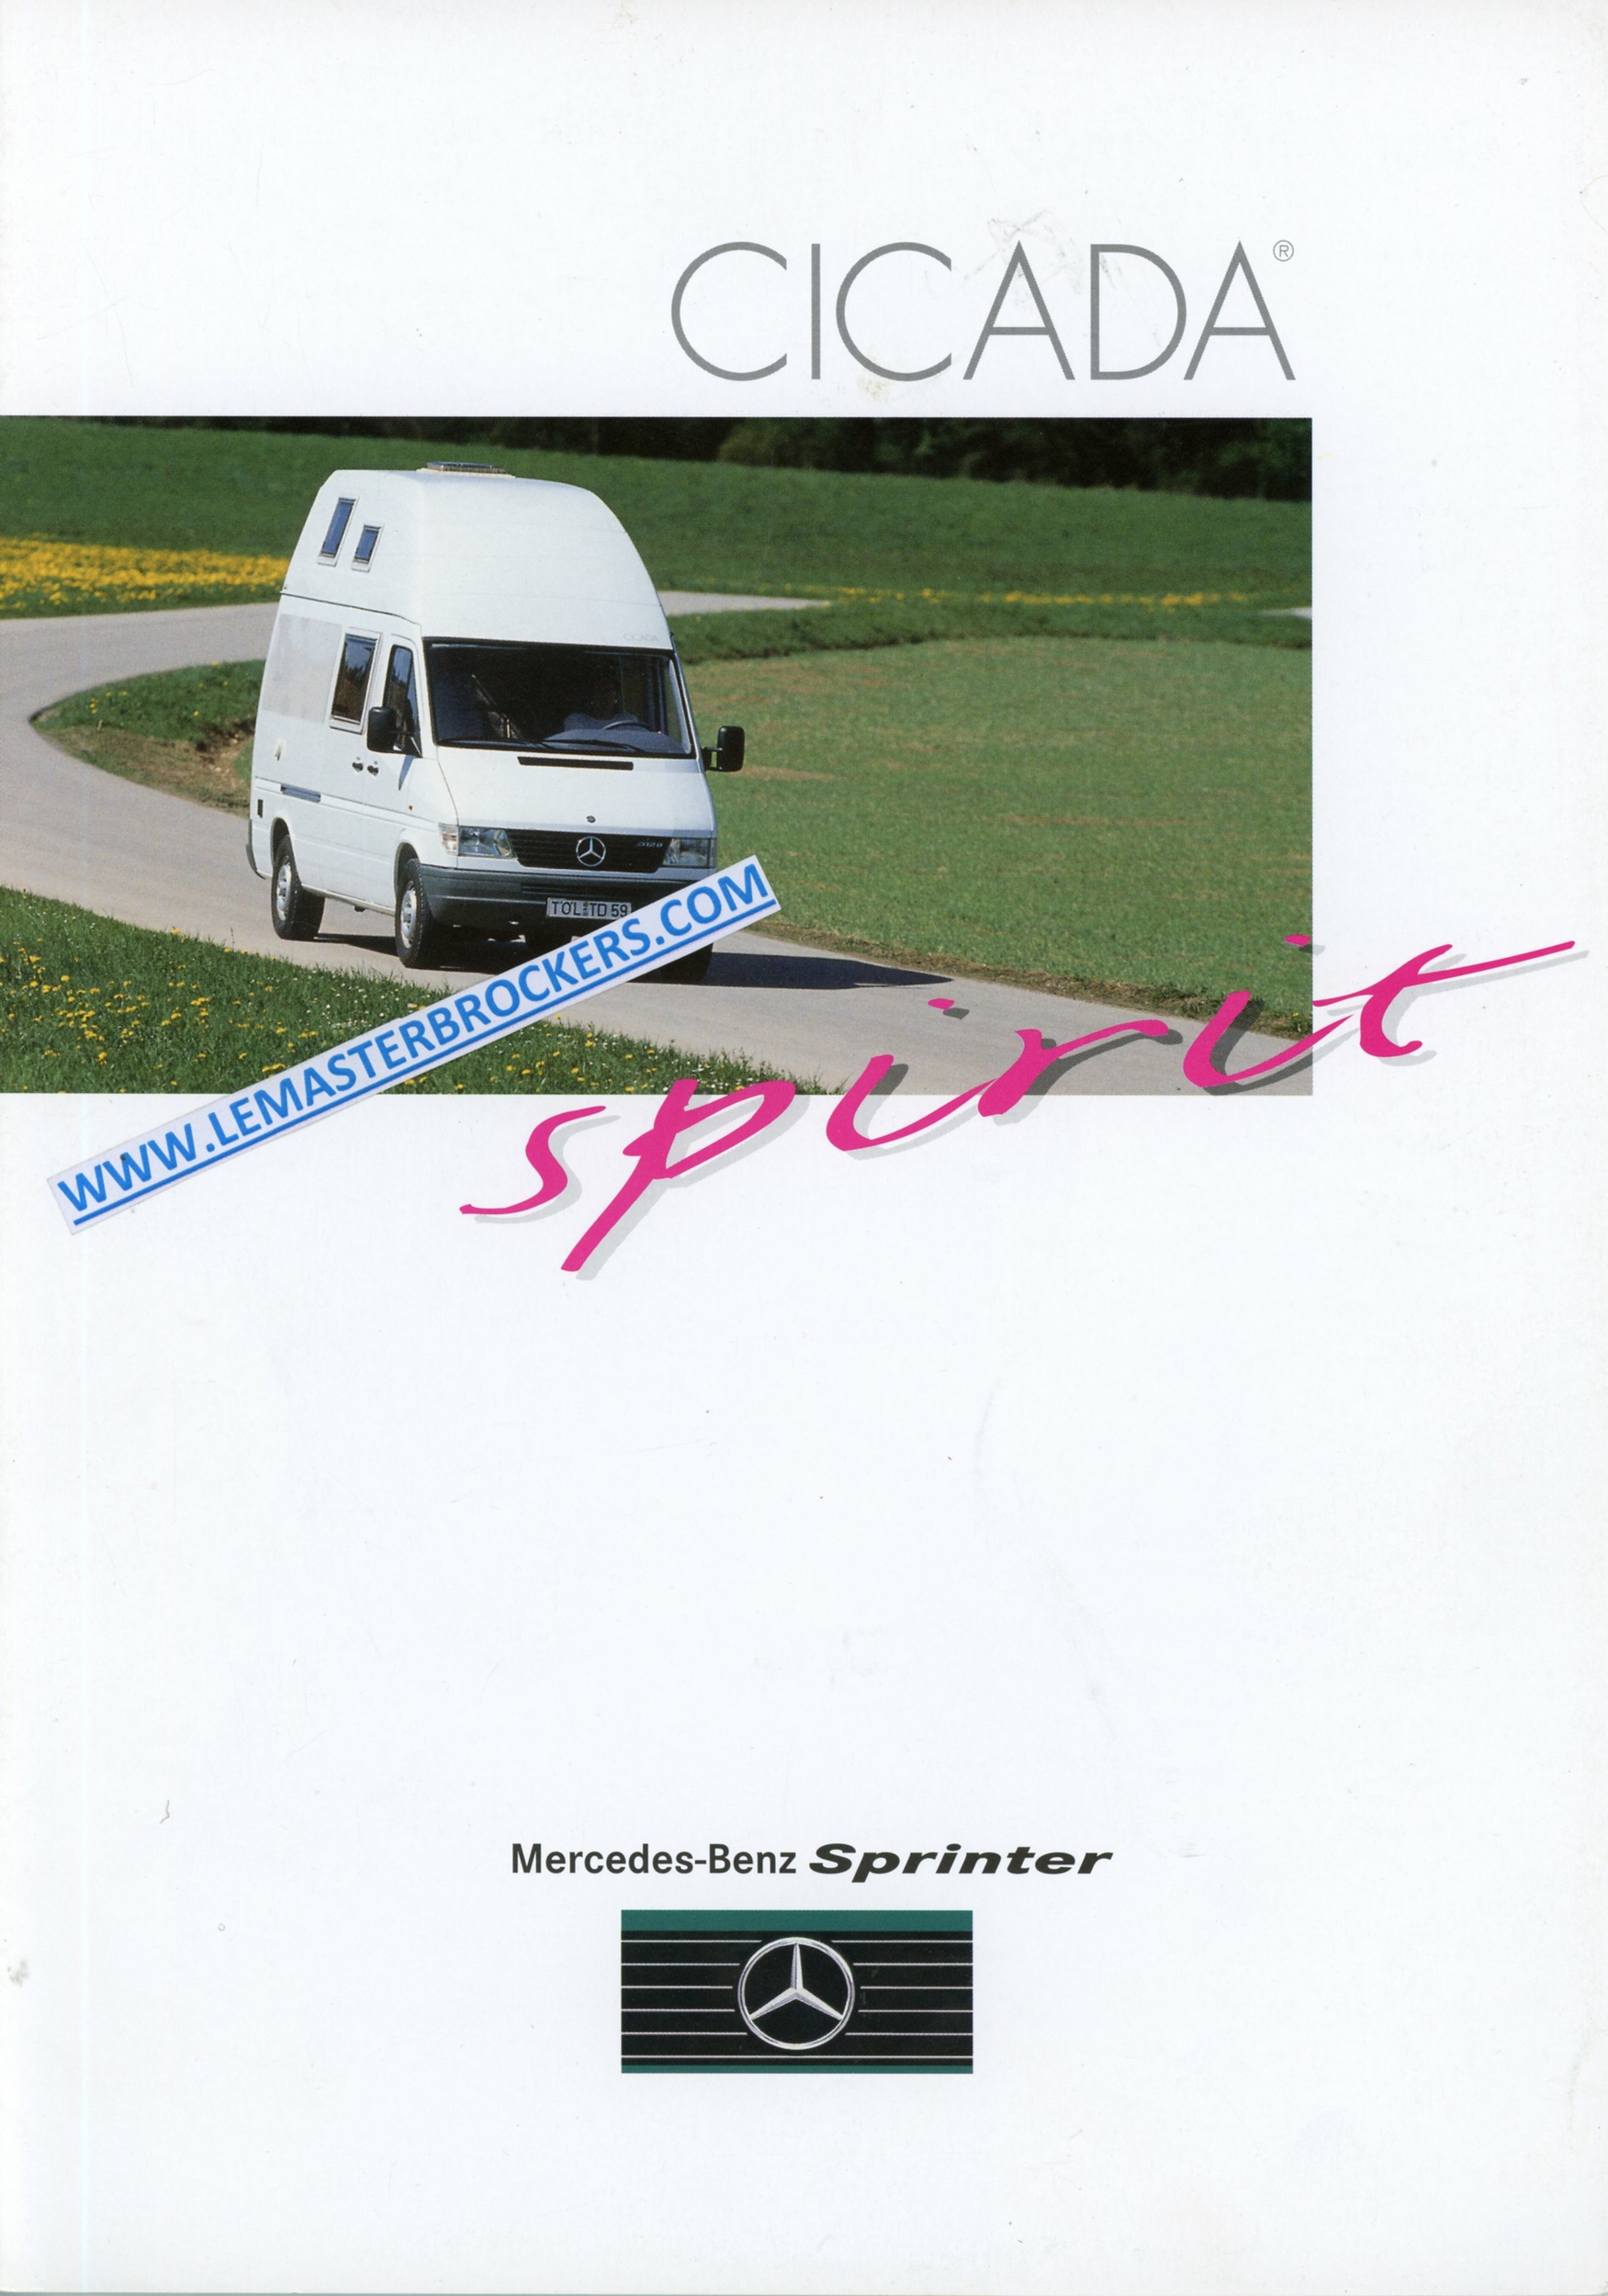 MERCEDES-SPRINTER-CICADA-SPIRIT-1995-LEMASTERBROCKERS-CATALOGUE-PROSPECTUS-CAMPING-CAR-VAN